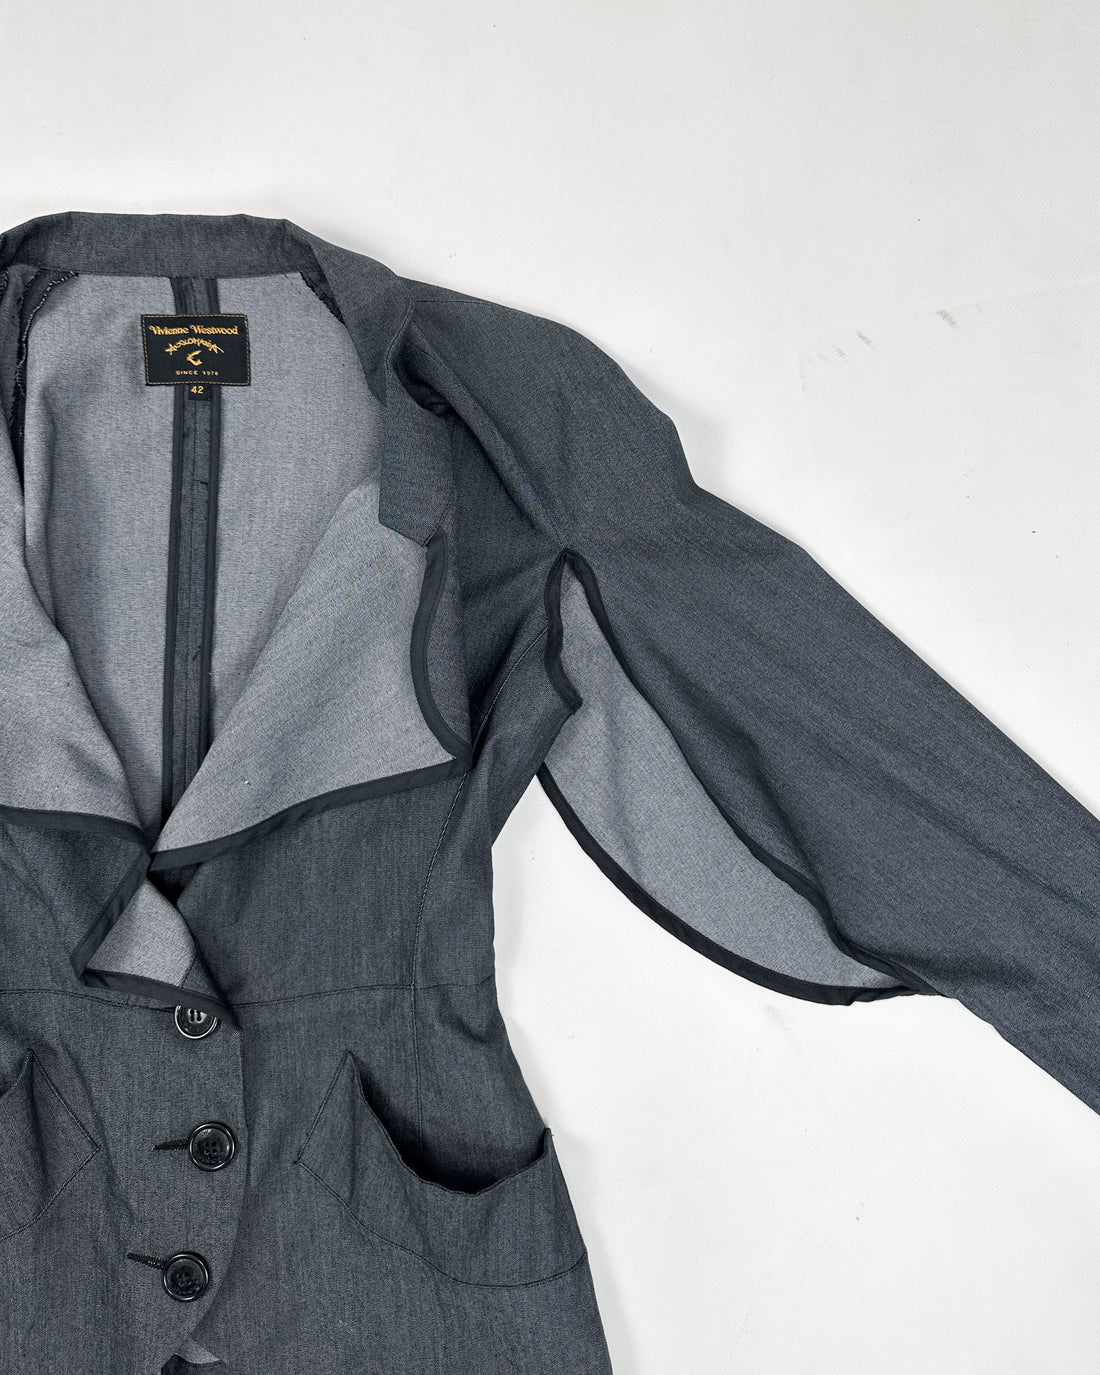 Vivienne Westwood Deconstructed Grey Blazer 1990's